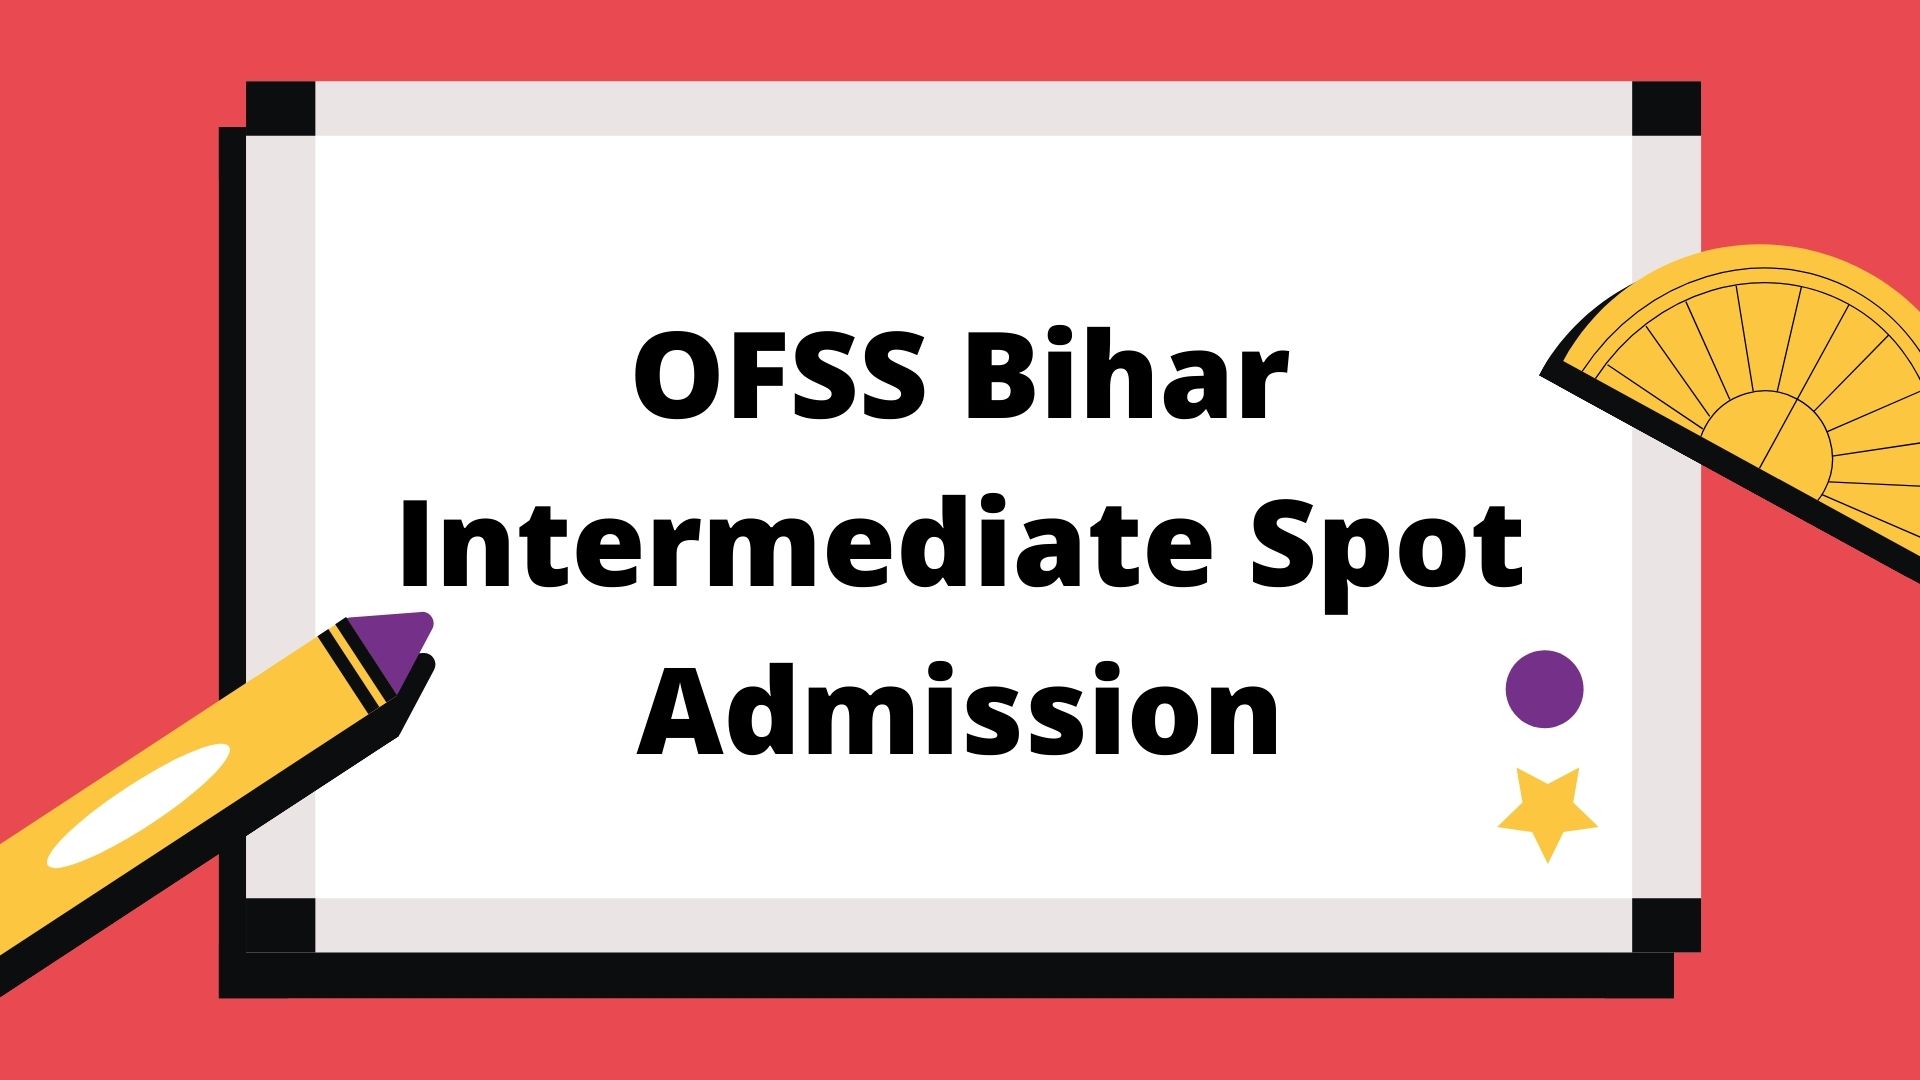 OFSS Bihar Intermediate Spot Admission